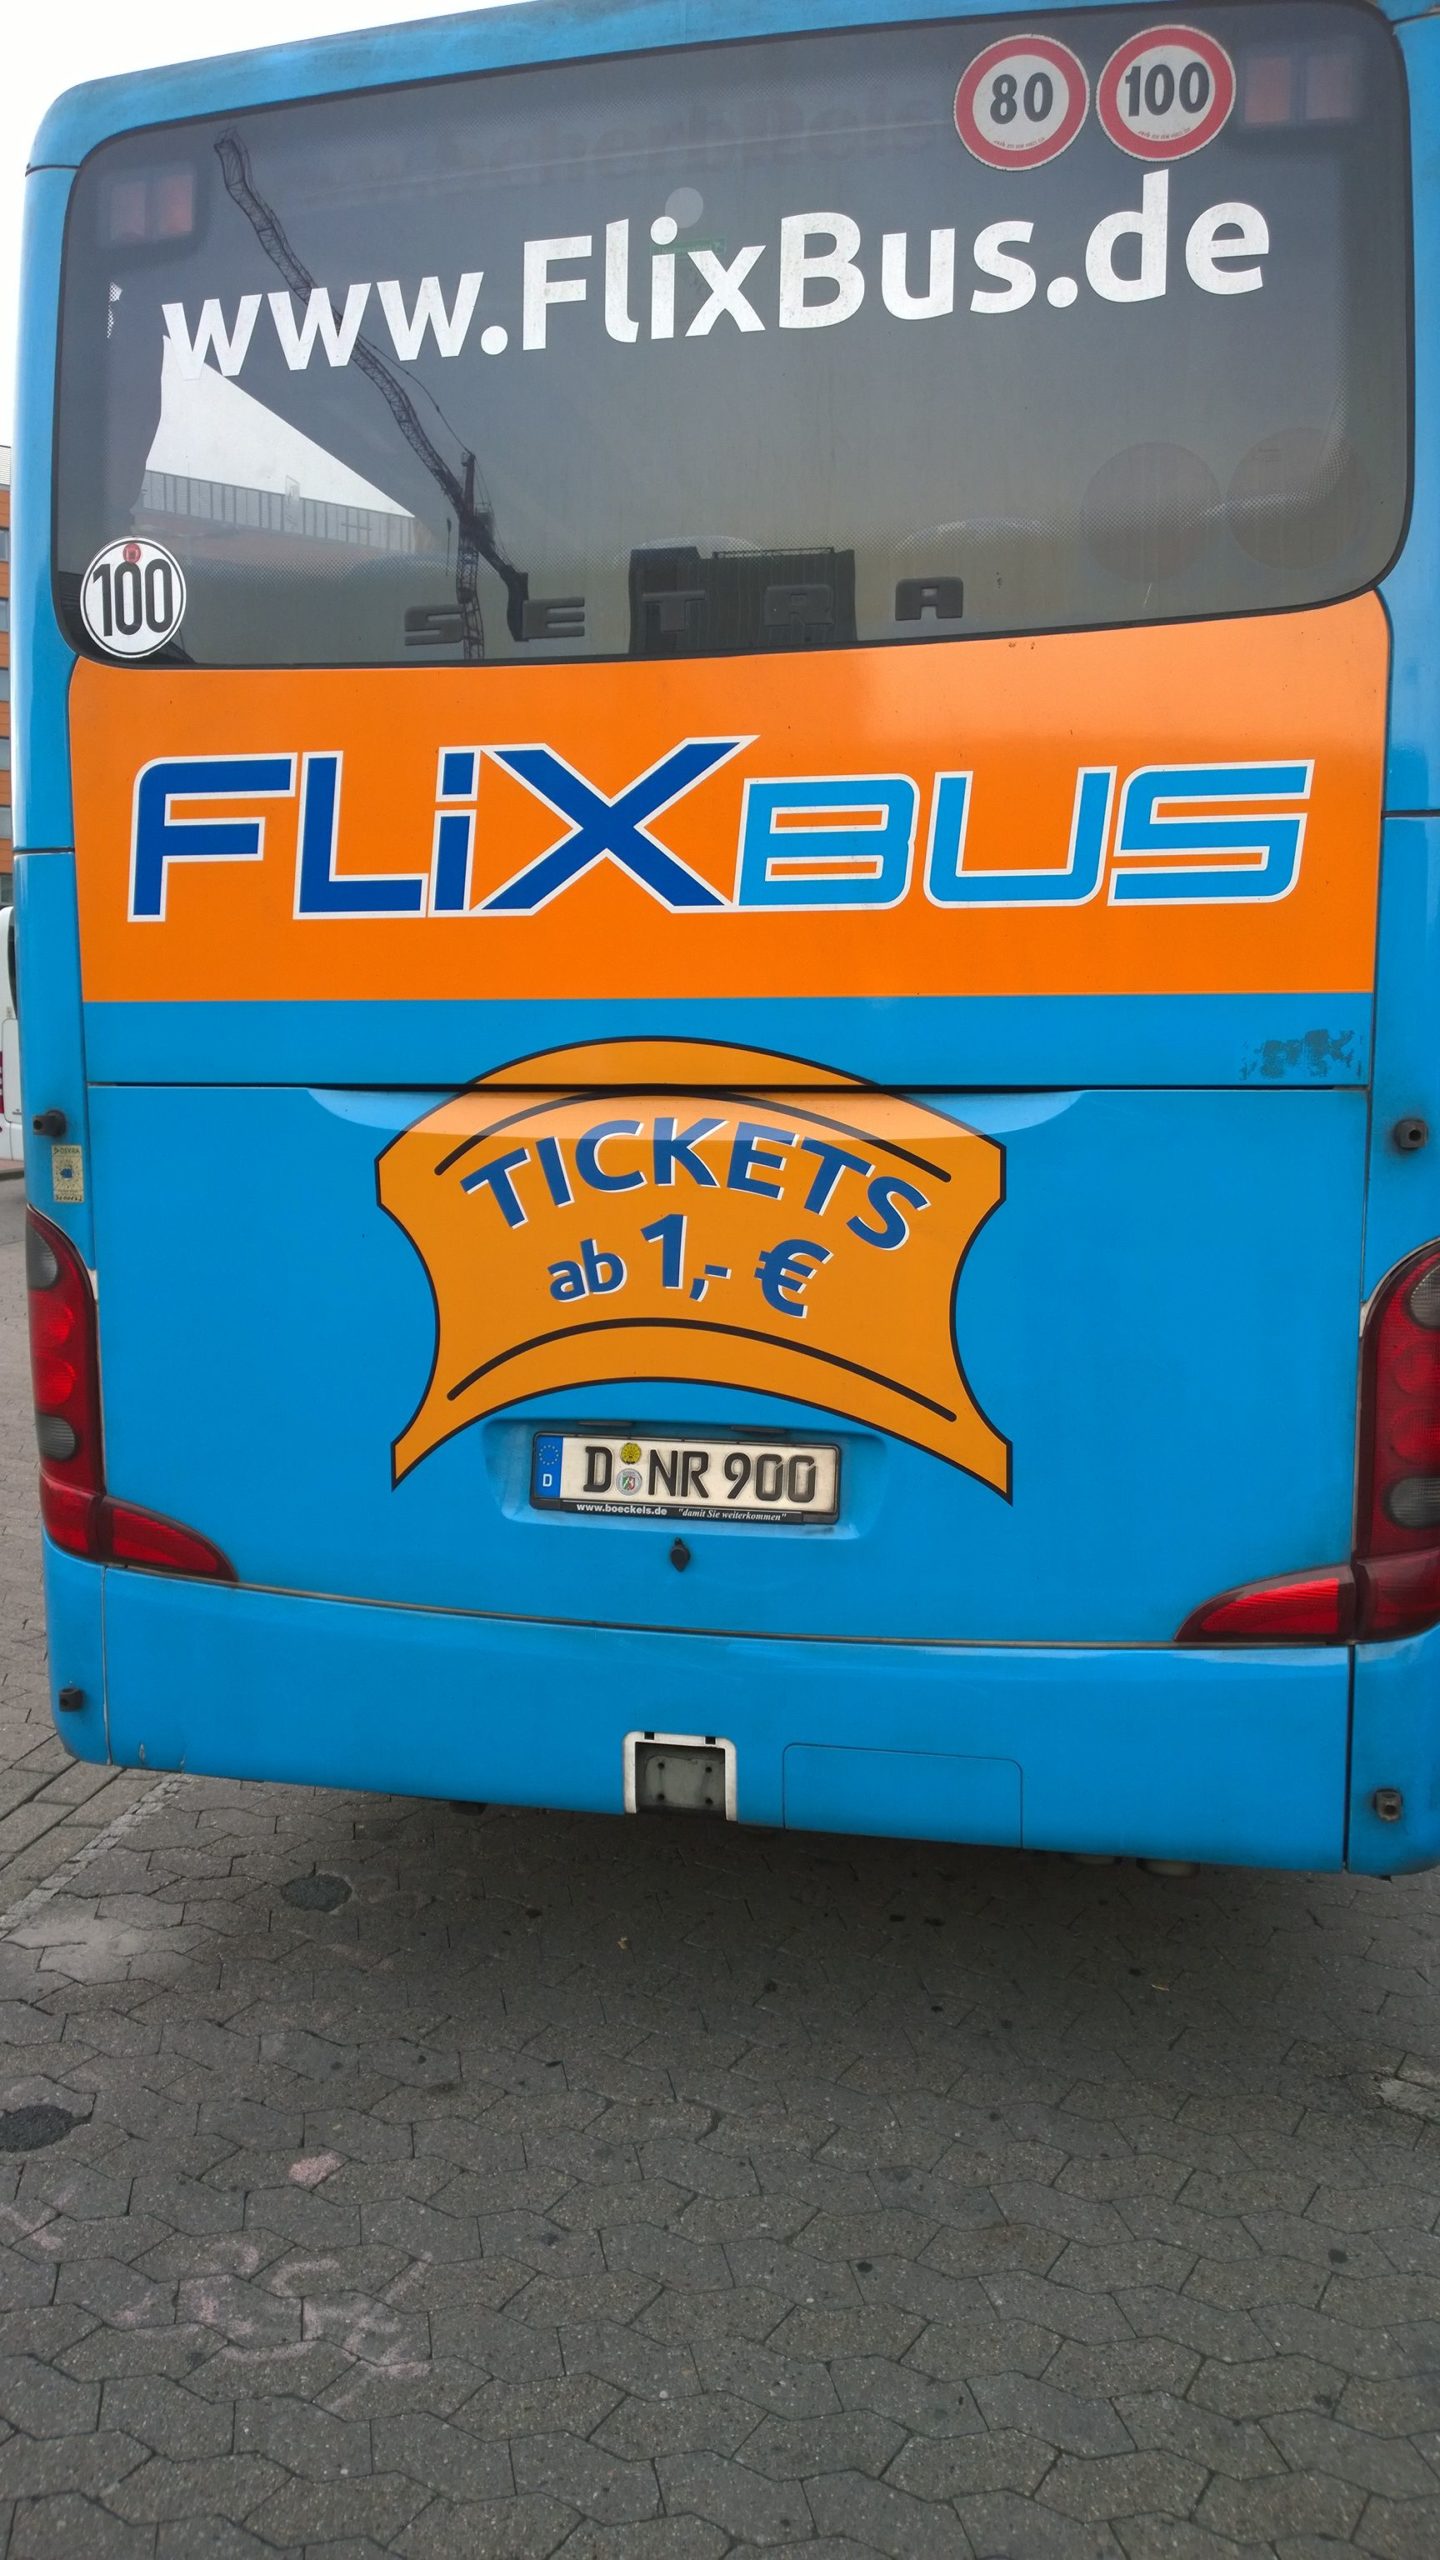 FlixBus einmal und nie wieder! (Bild: Thorsten Claus)